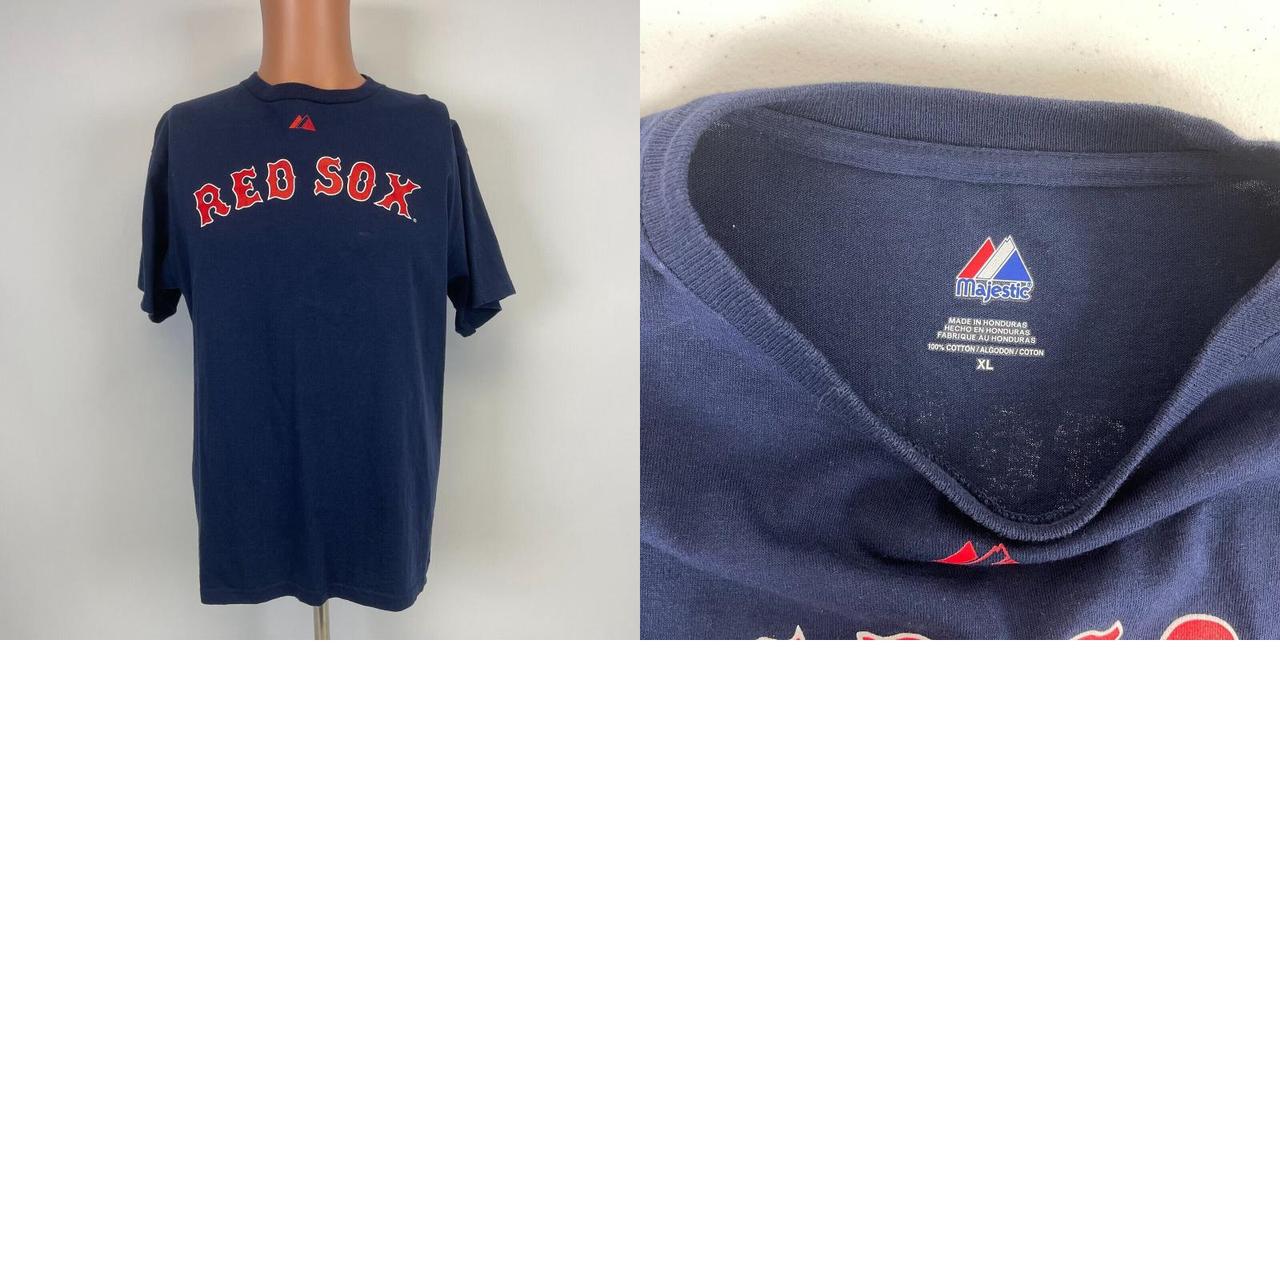 Majestic Daisuke Matsuzaka Boston Red Sox Jersey T Shirt Dice K MLB  Baseball XL